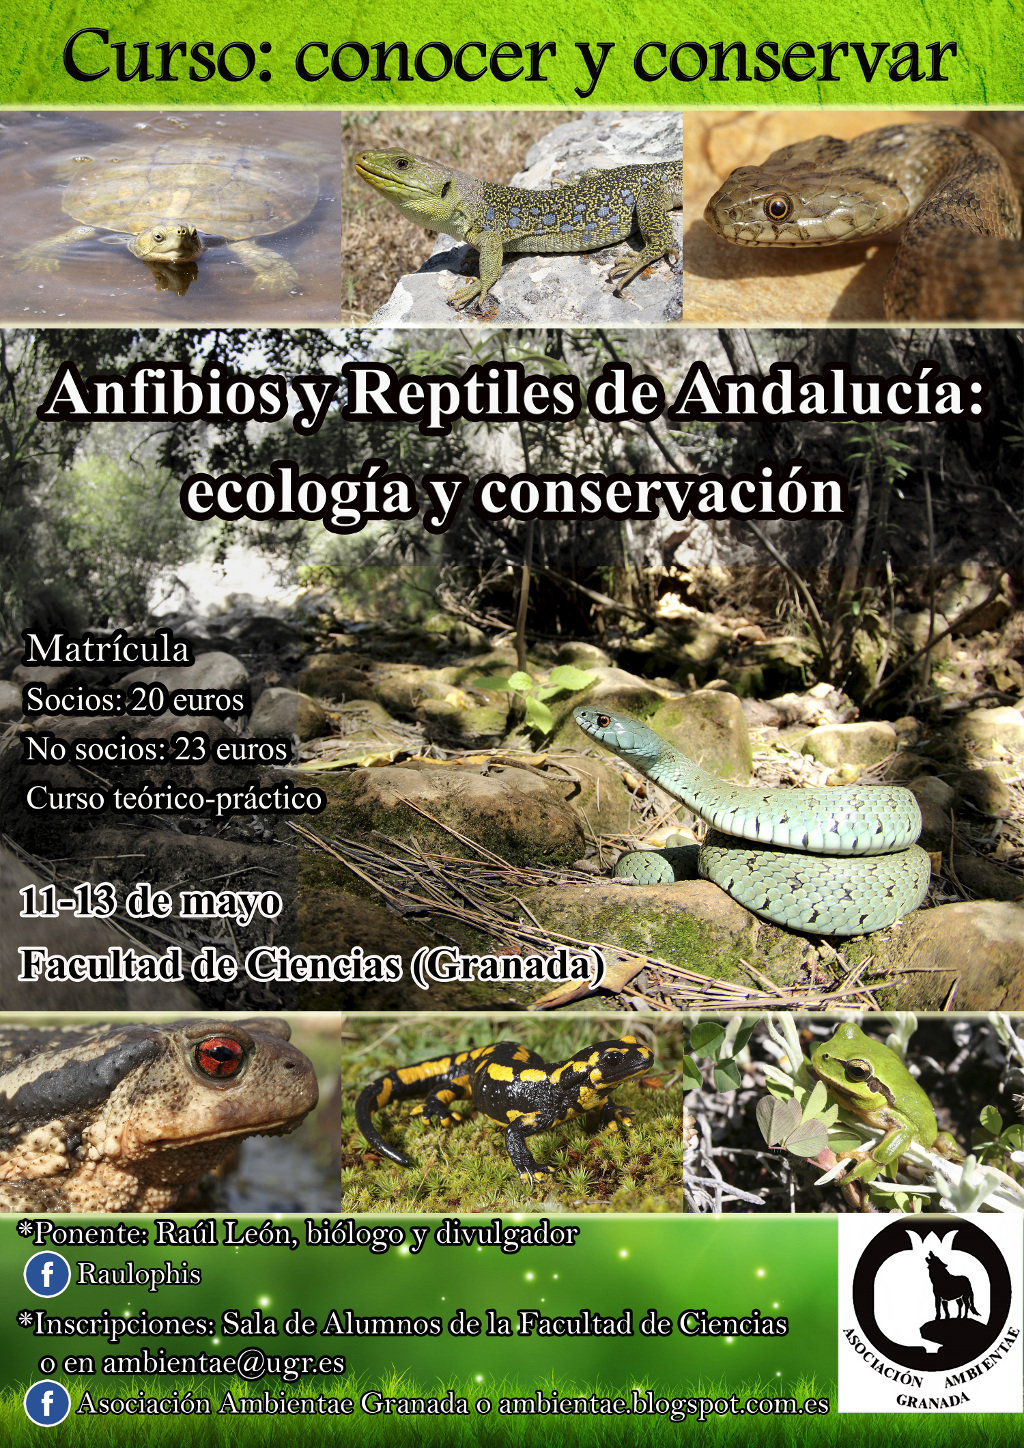 Curso "Conocer y conservar. Reptiles y anfibios de Andalucía, entre la tierra y el agua"